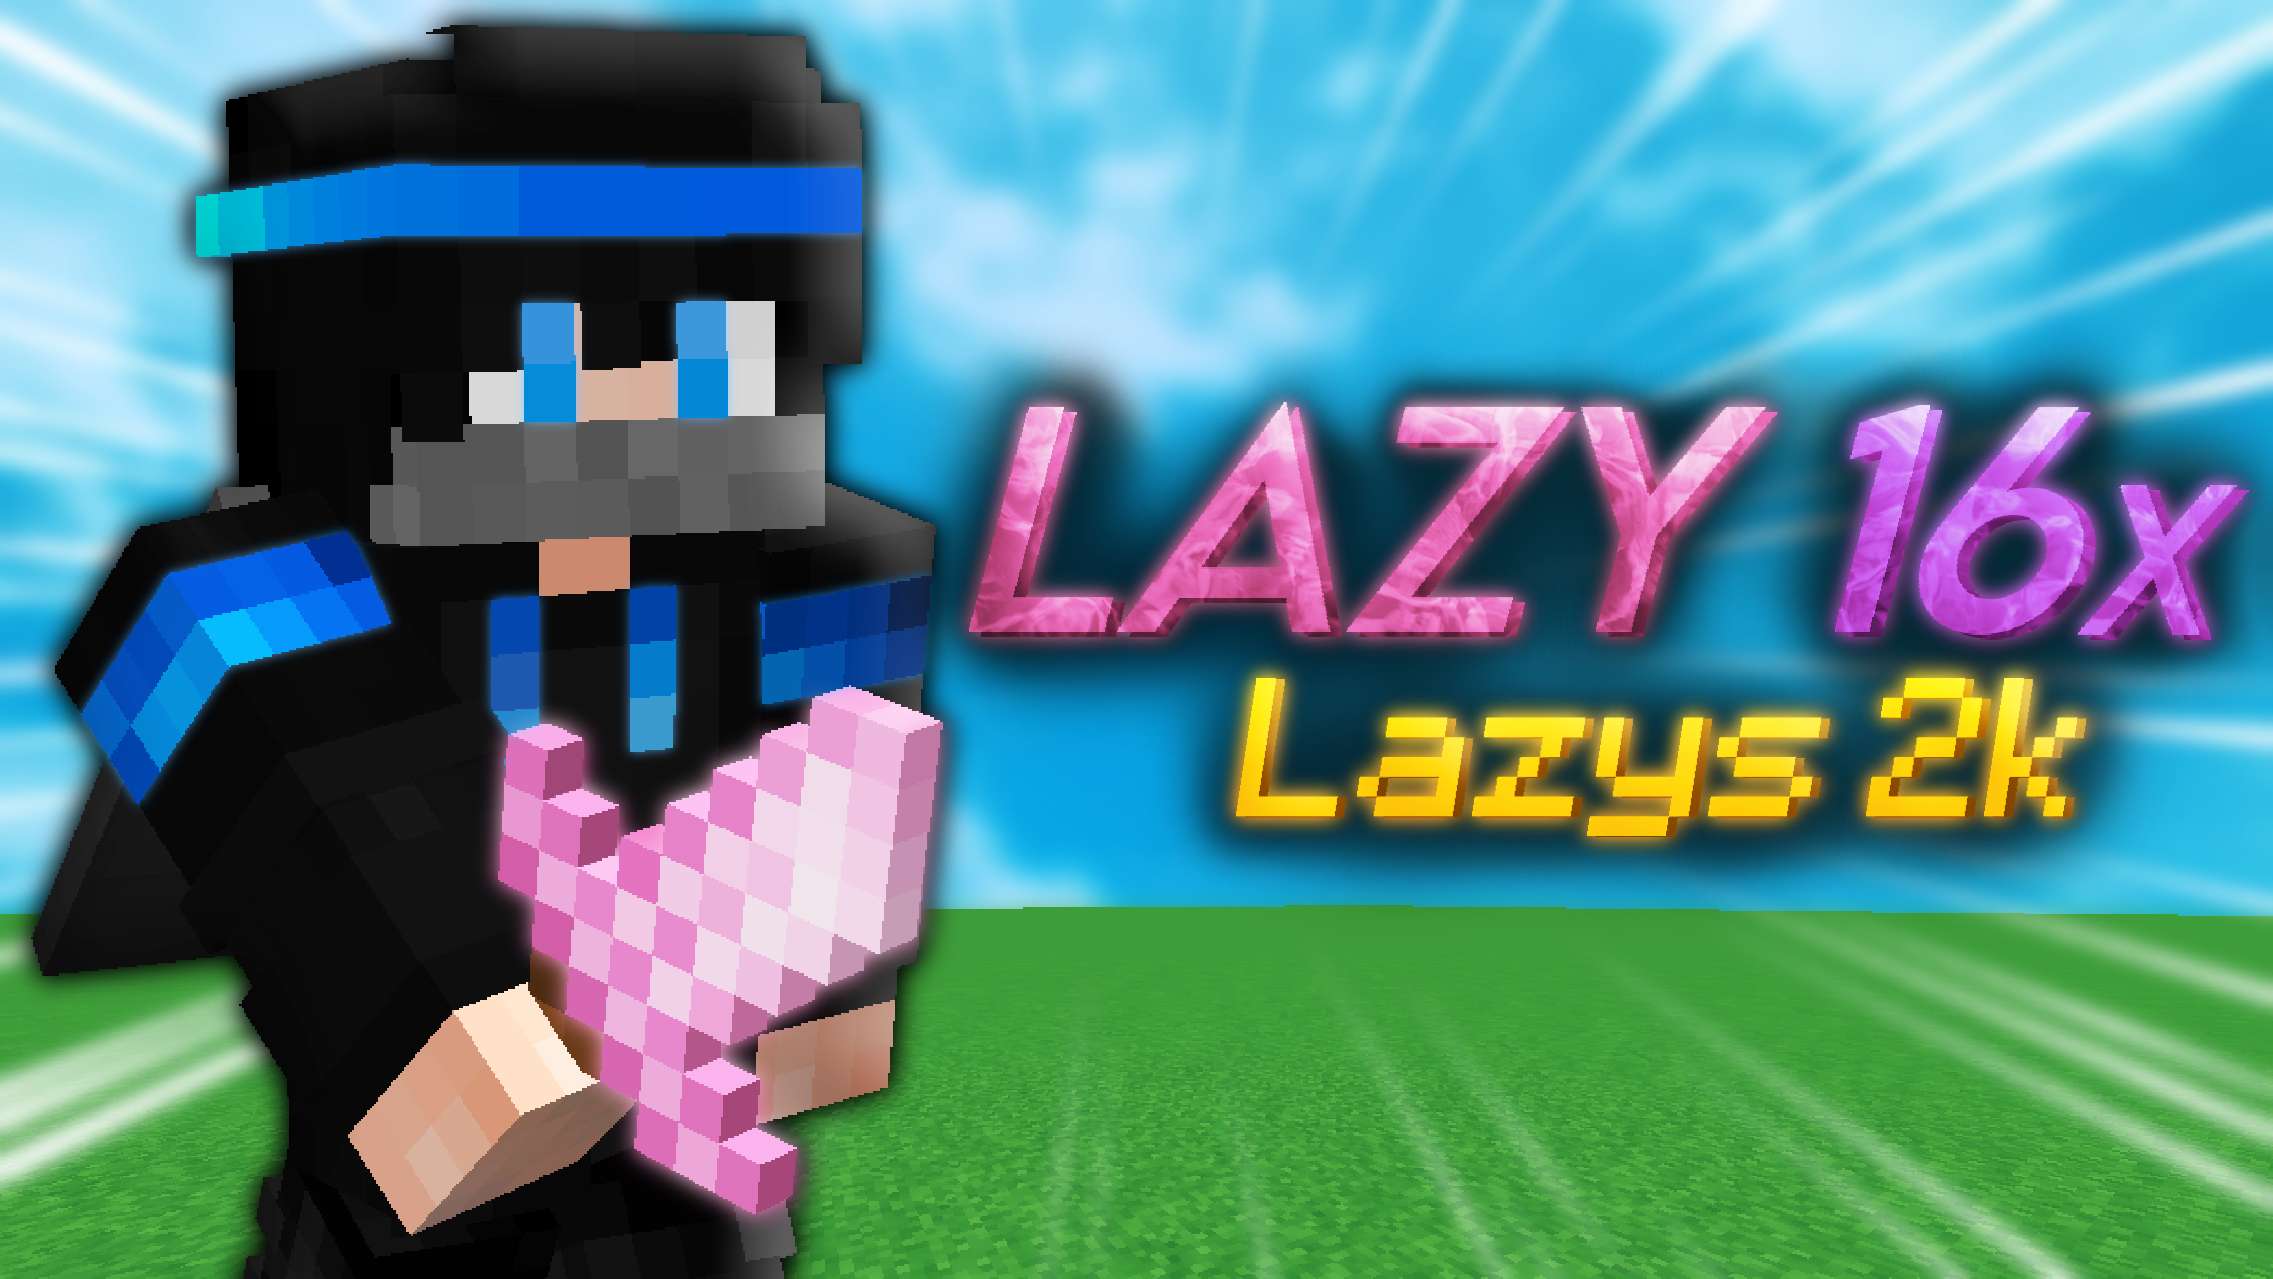 Lazy - (Lazys 2k) 16 by Mqryo on PvPRP